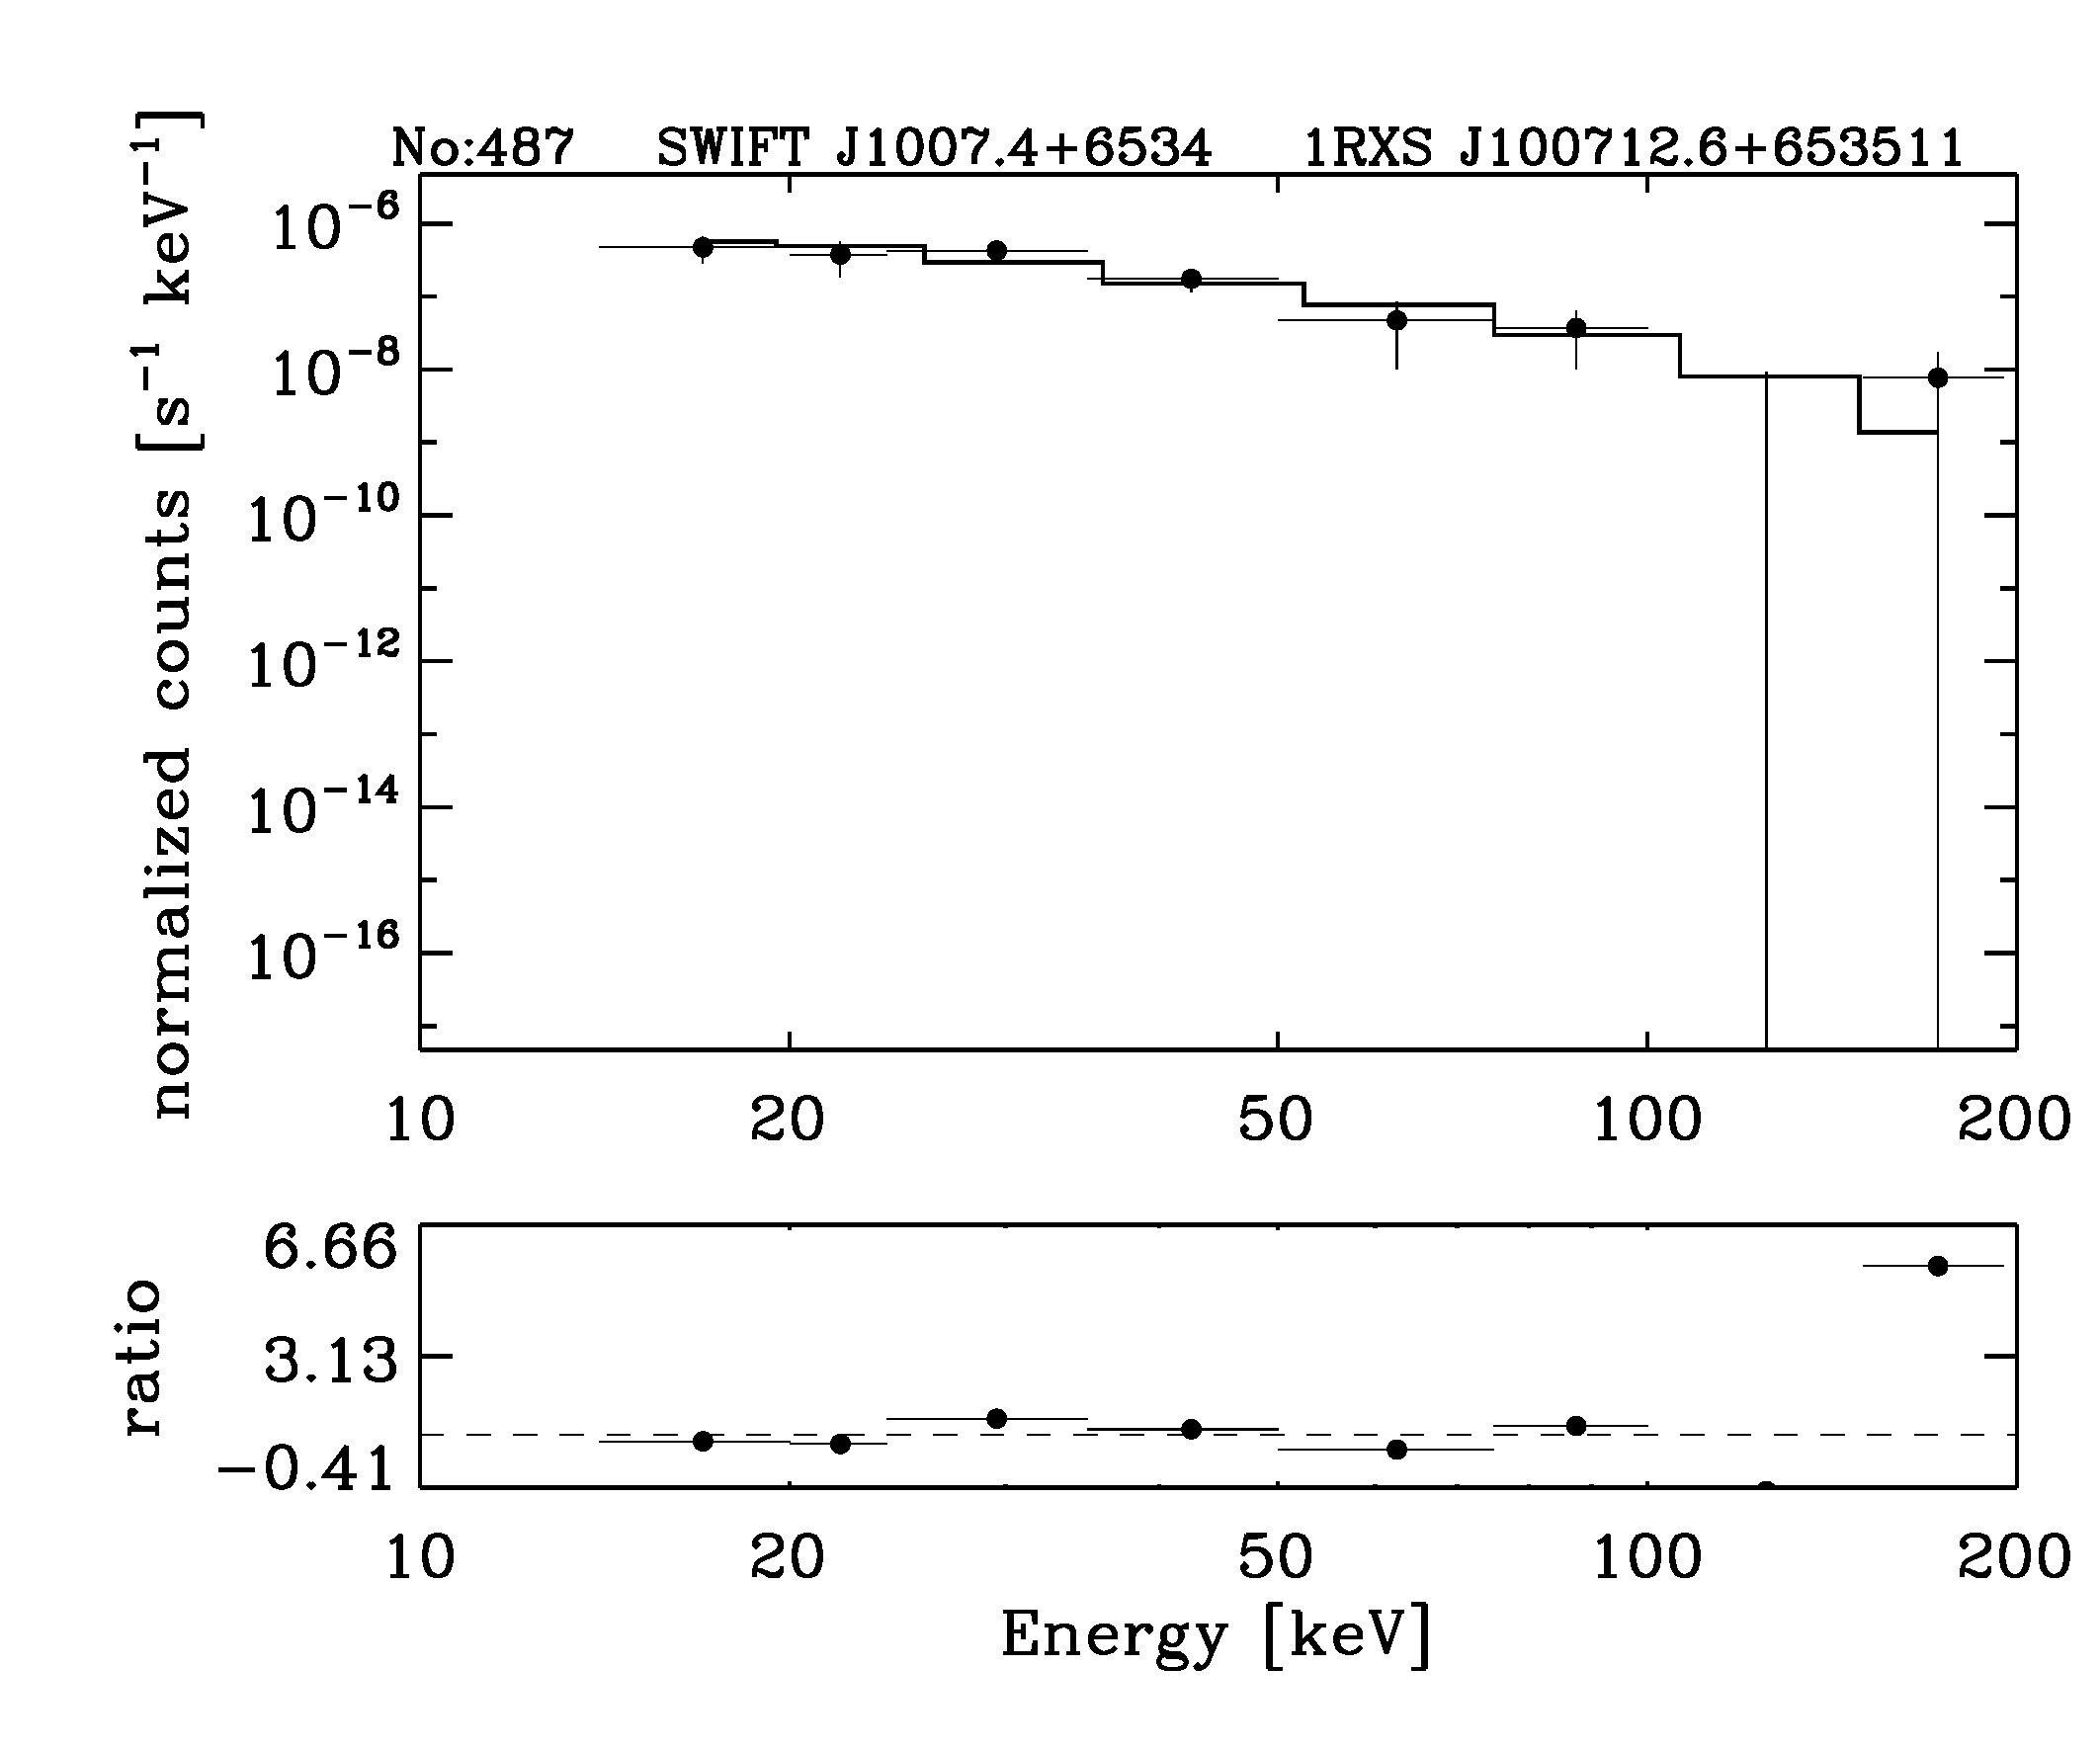 BAT Spectrum for SWIFT J1007.4+6534